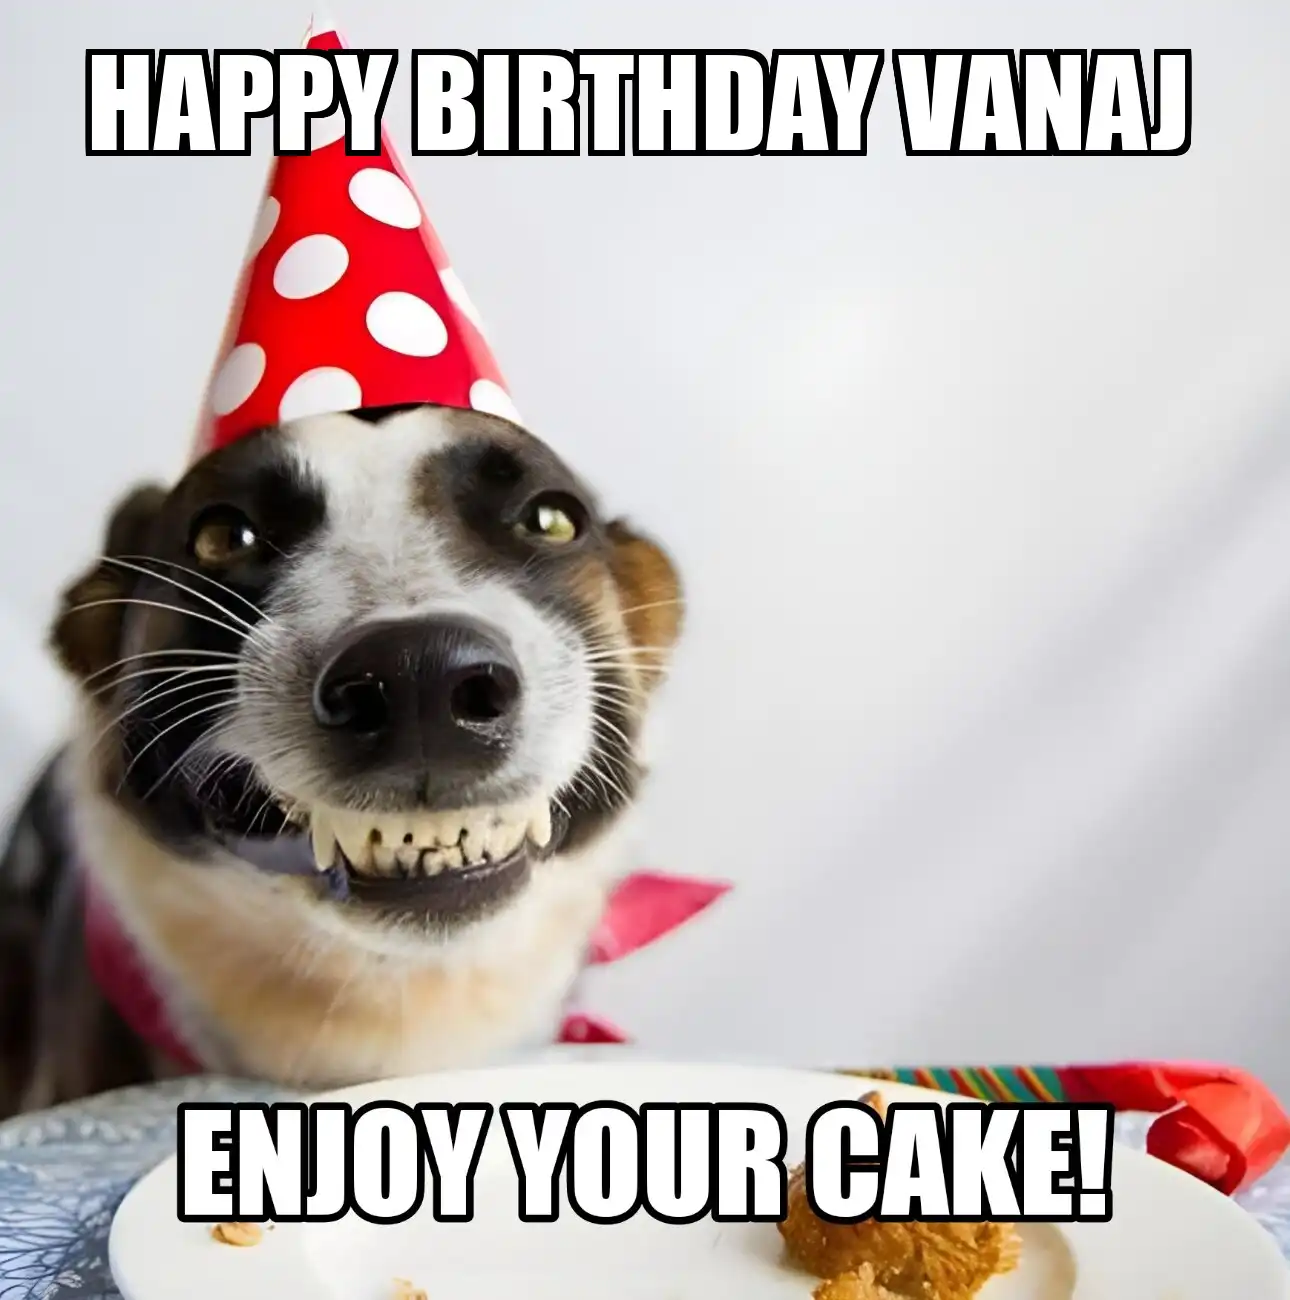 Happy Birthday Vanaj Enjoy Your Cake Dog Meme